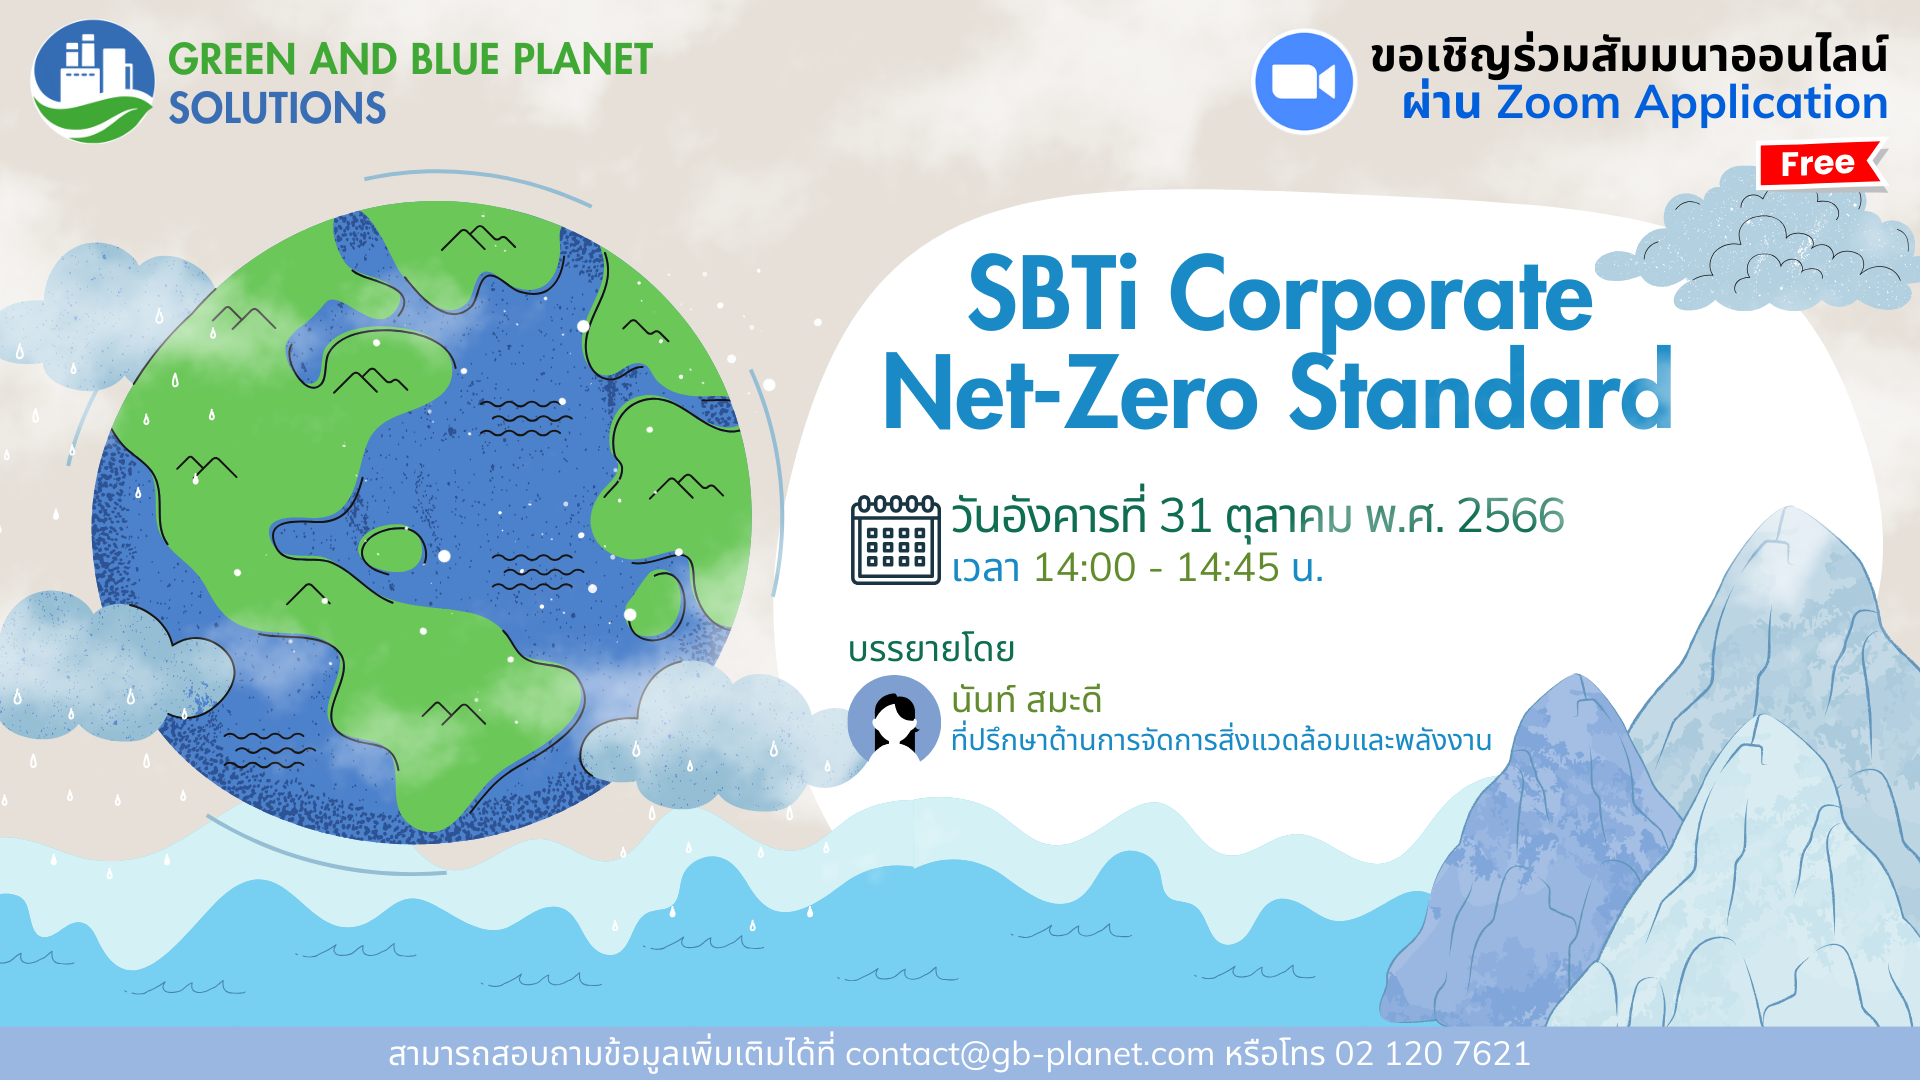 การจัดสัมมนาออนไลน์ เรื่อง SBTi Corporate Net-Zero Standard